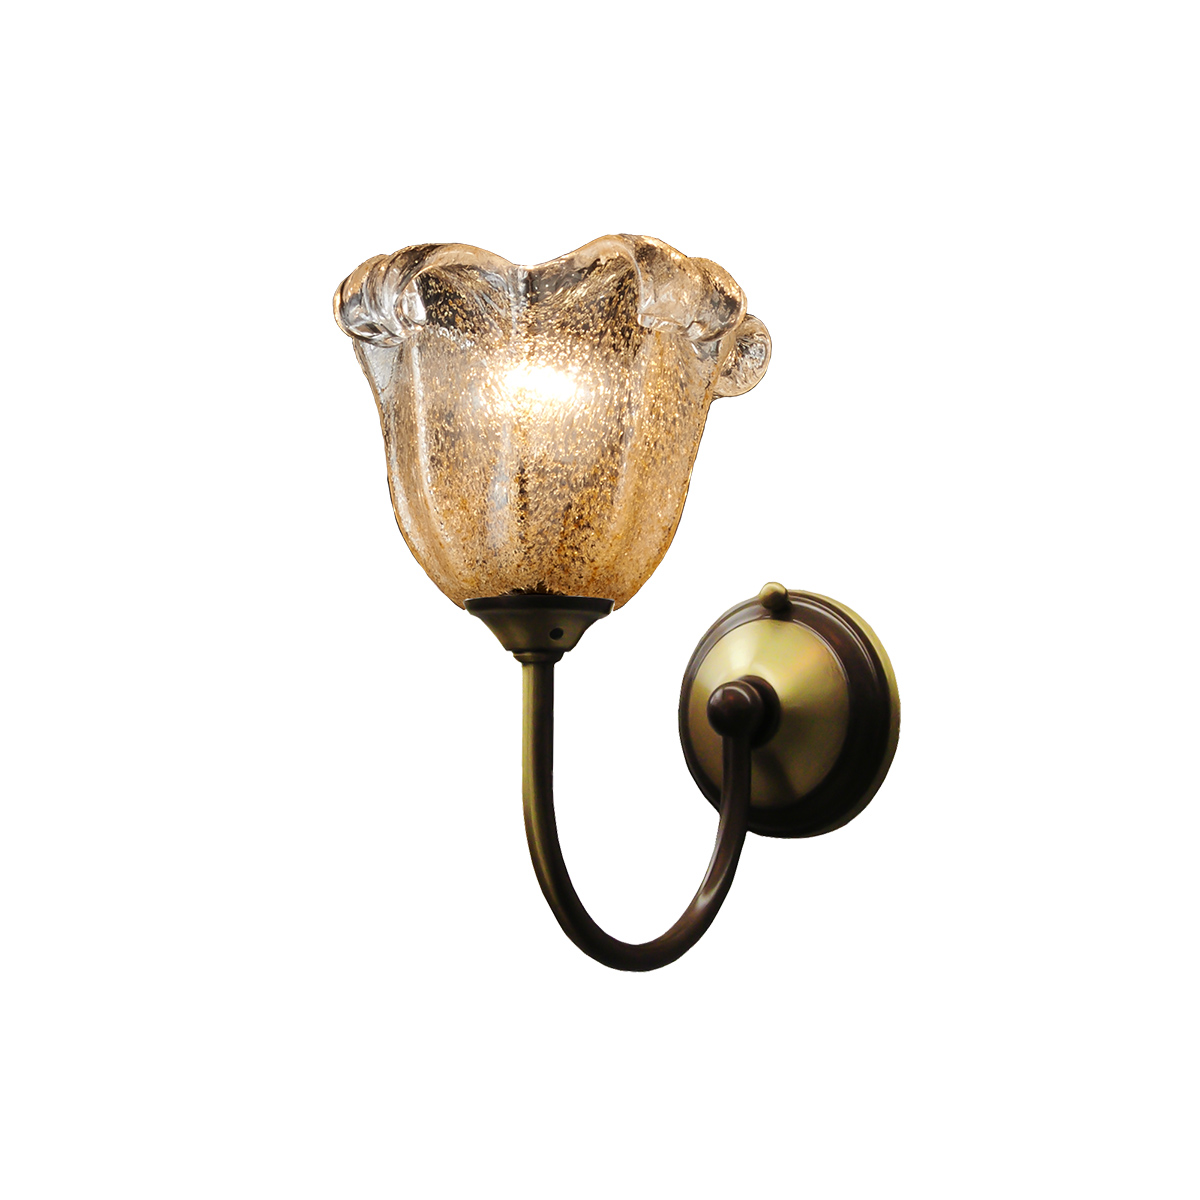 Κλασική απλίκα με μελί κρύσταλλο Μουράνο ΝΑΞΟΣ-1 classic wall lamp with amber Murano crystal